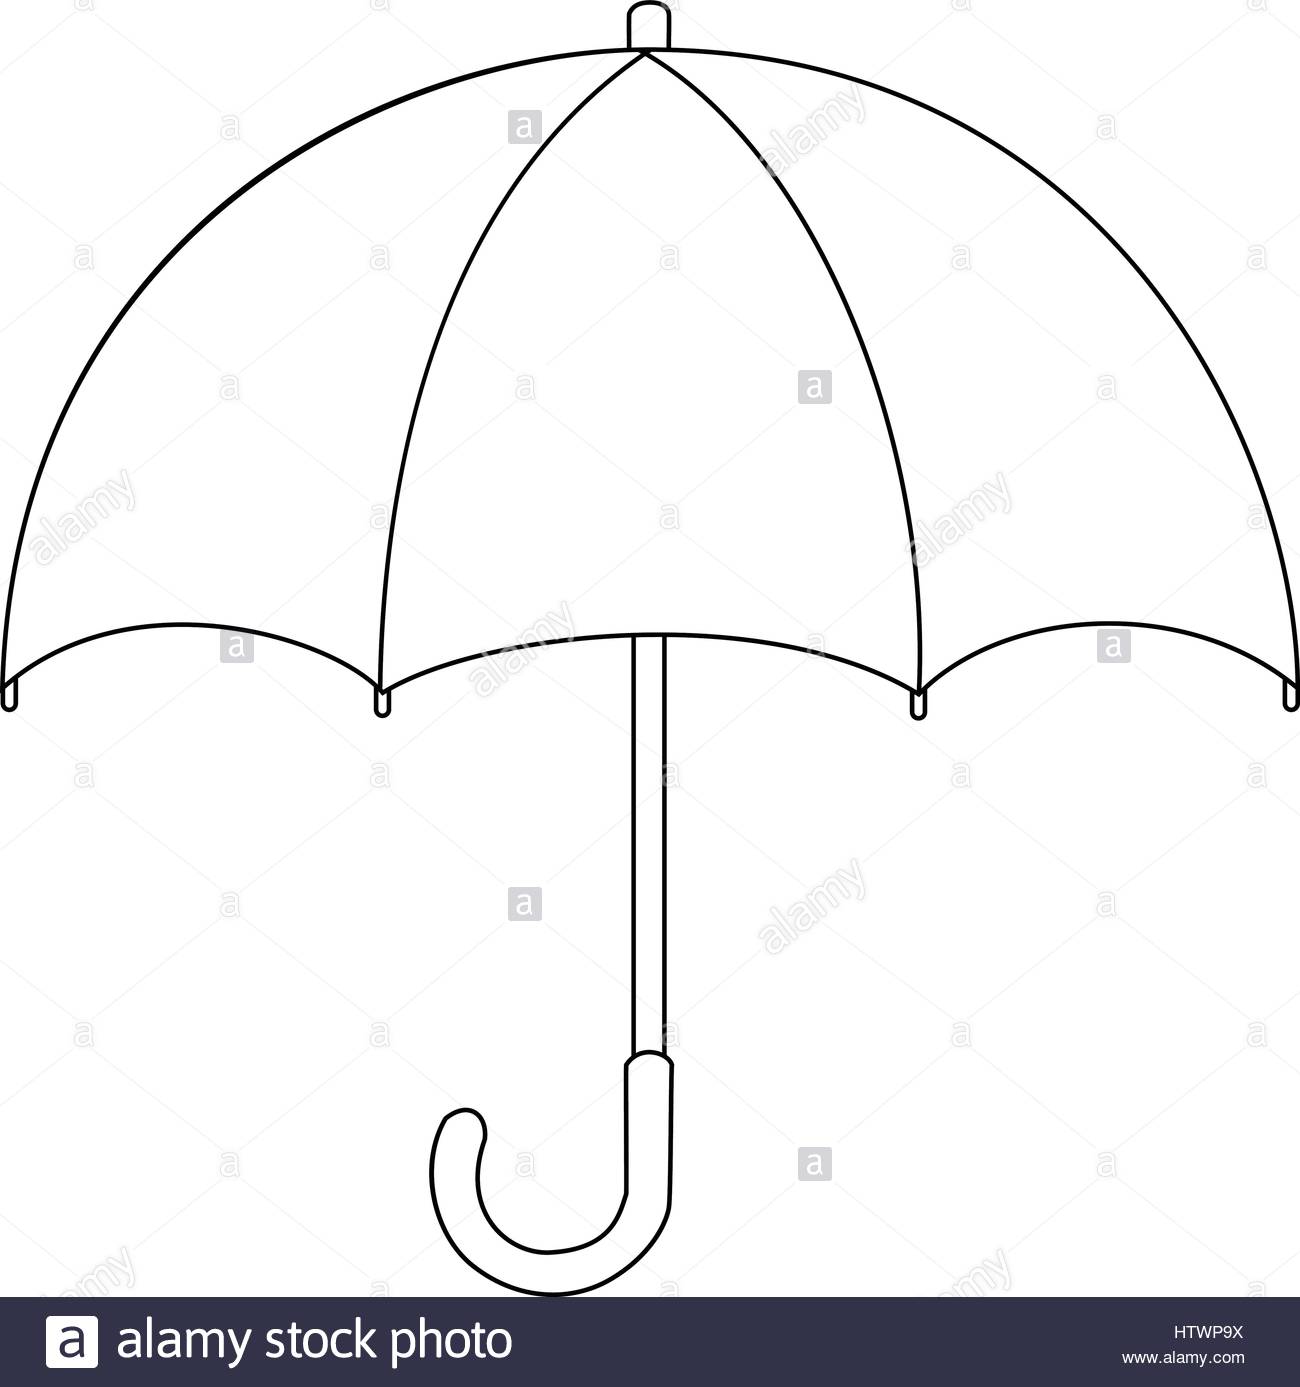 Нарисовать зонт поэтапно